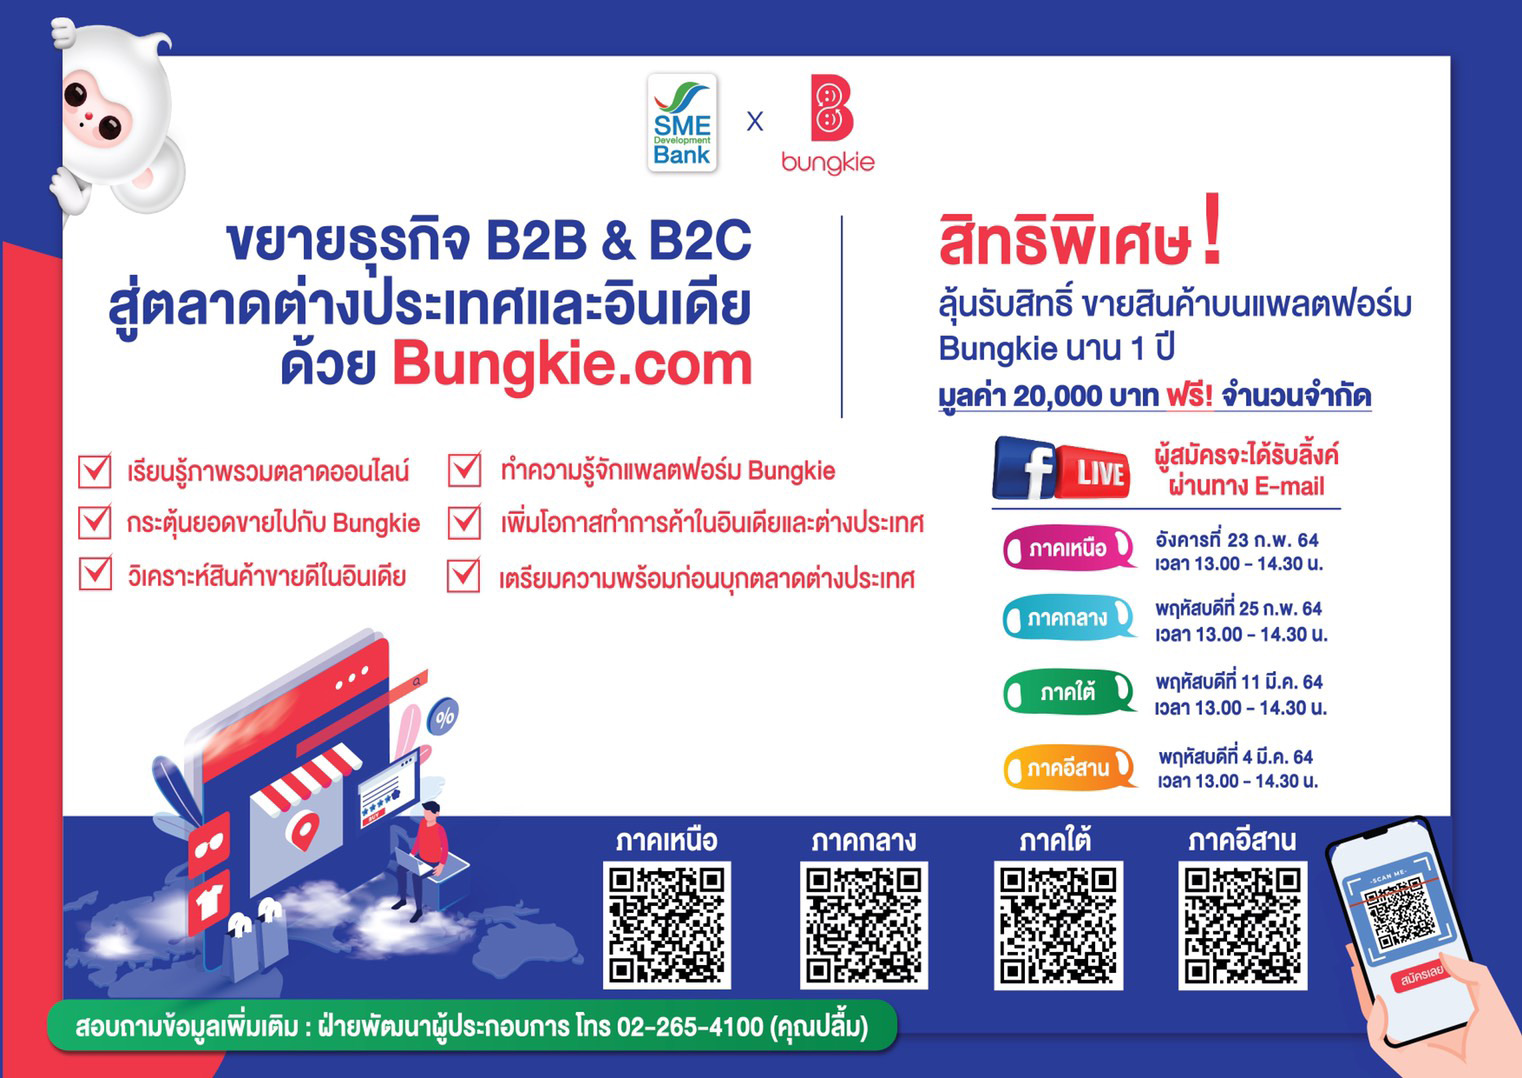 SME D Bank จับมือ Bungkie.com จัดสัมมนาออนไลน์หนุนเอสเอ็มอี ขยายตลาดอีคอมเมิร์ซประเทศอินเดีย